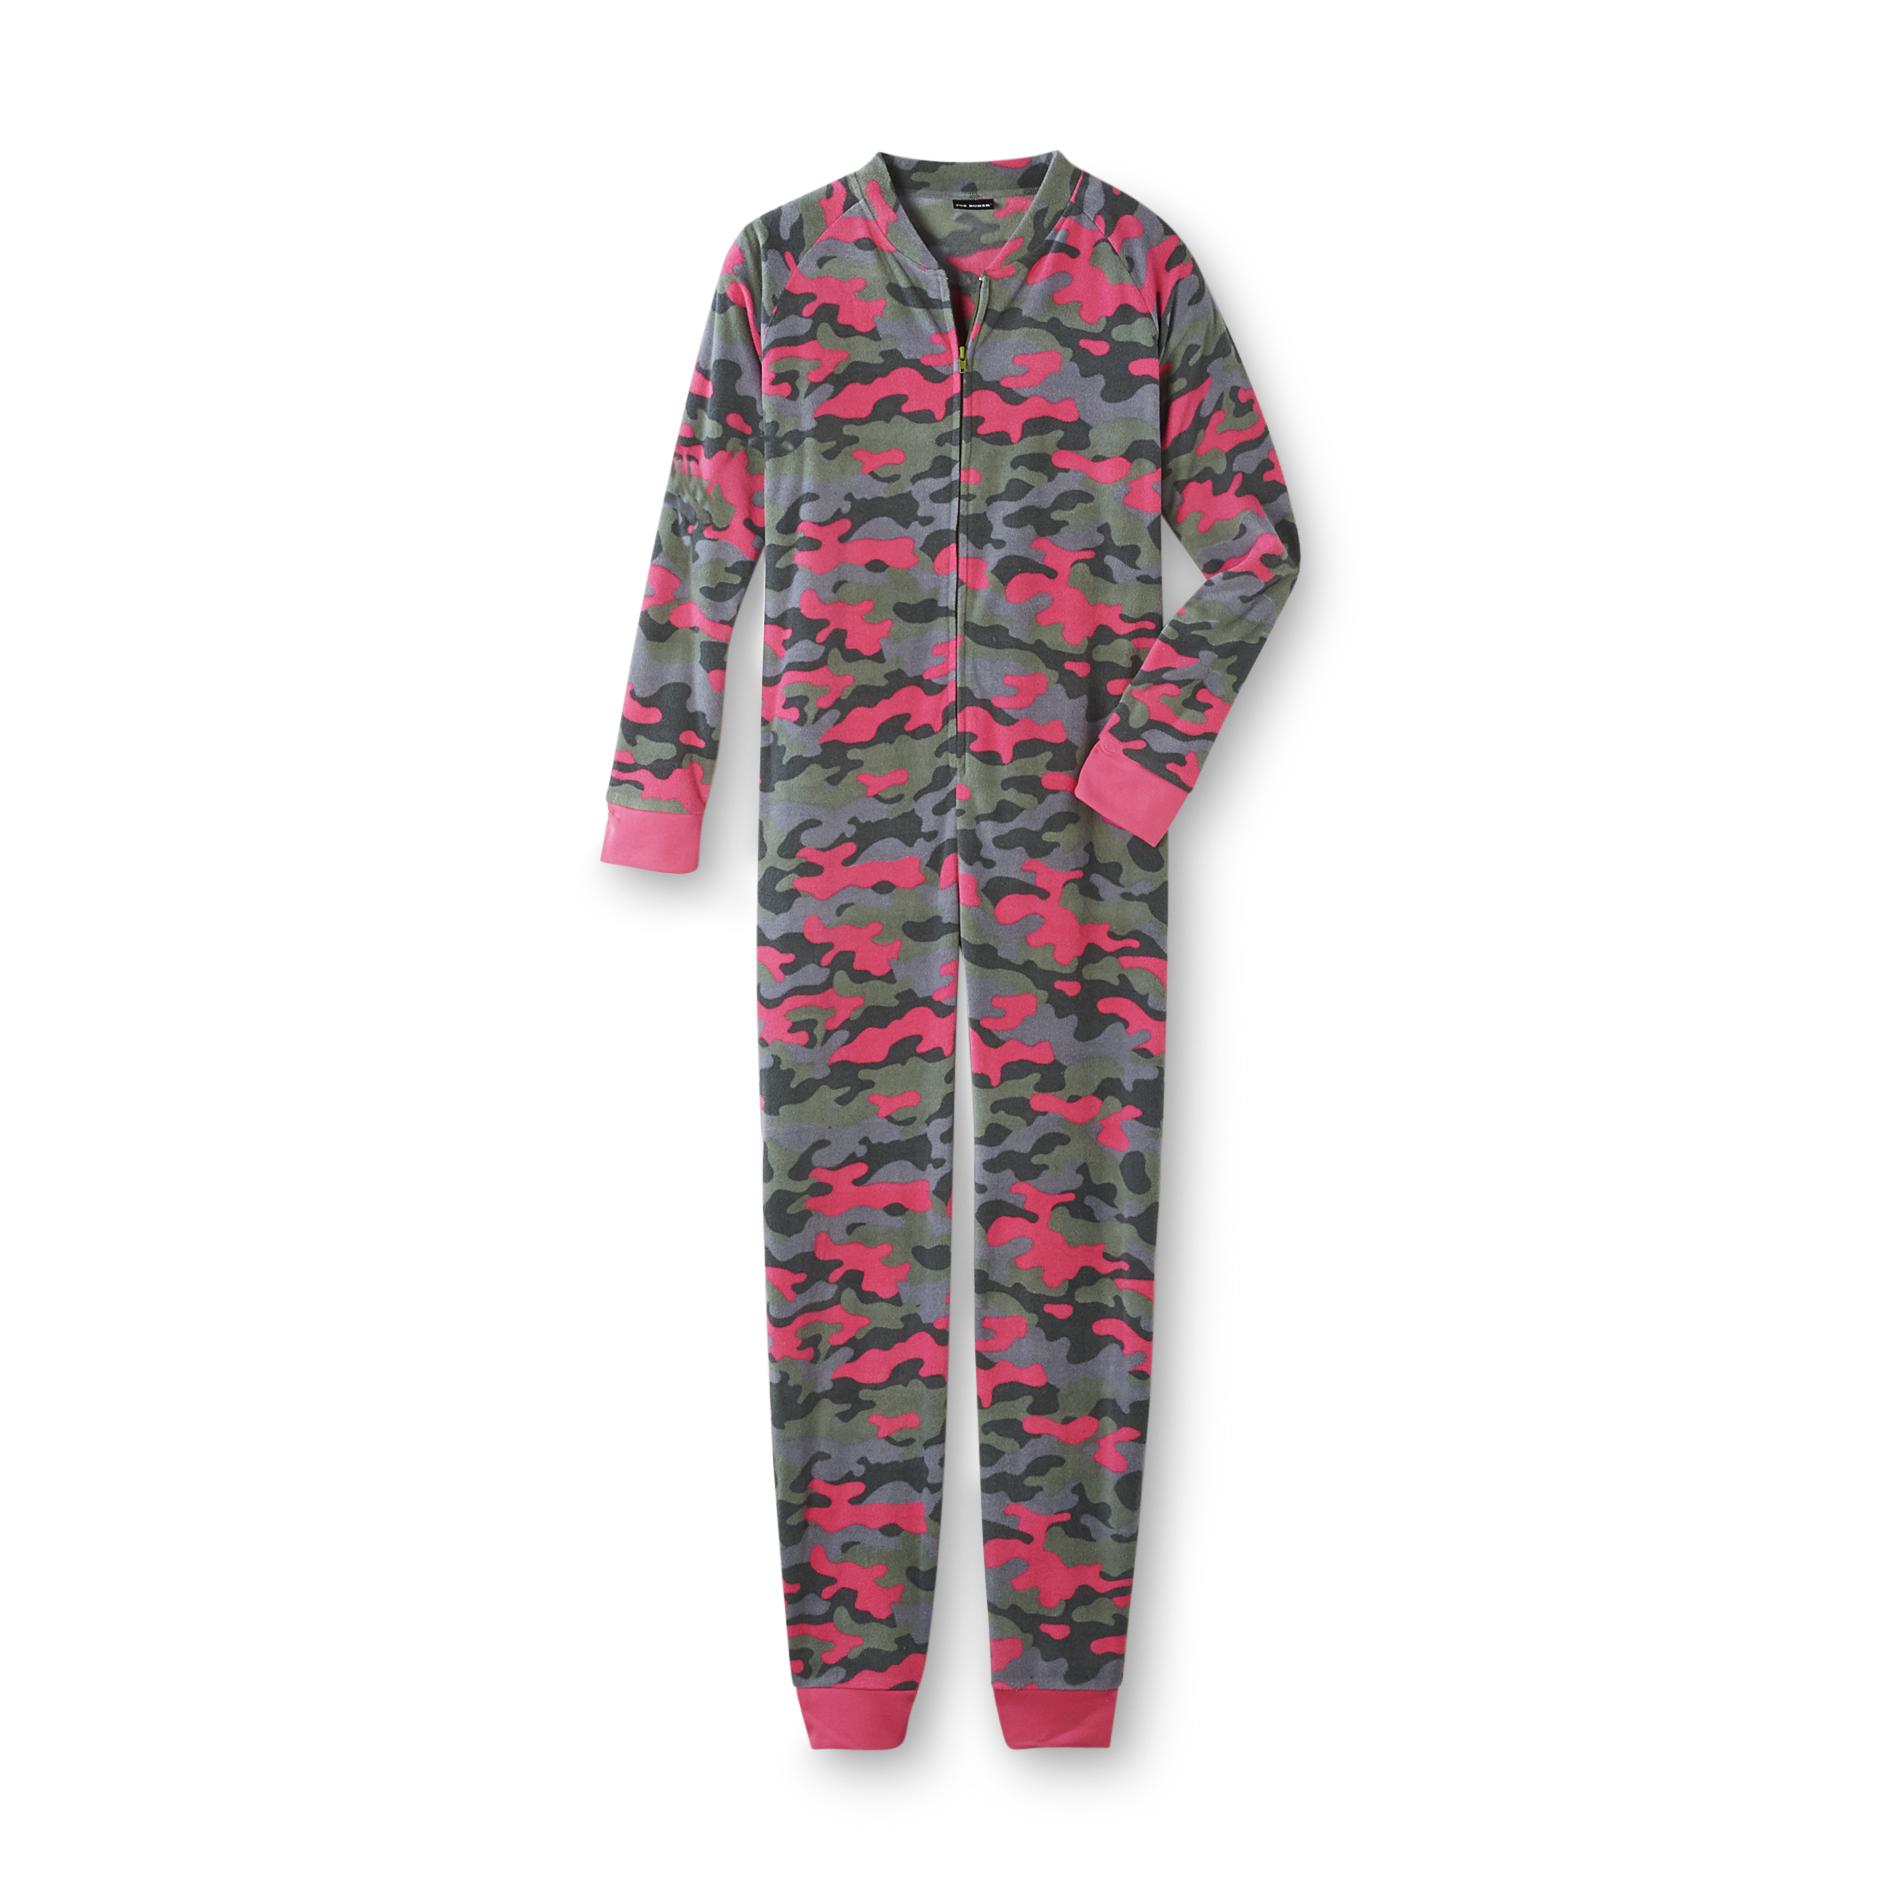 Joe Boxer Women's One-Piece Pajamas - Camouflage